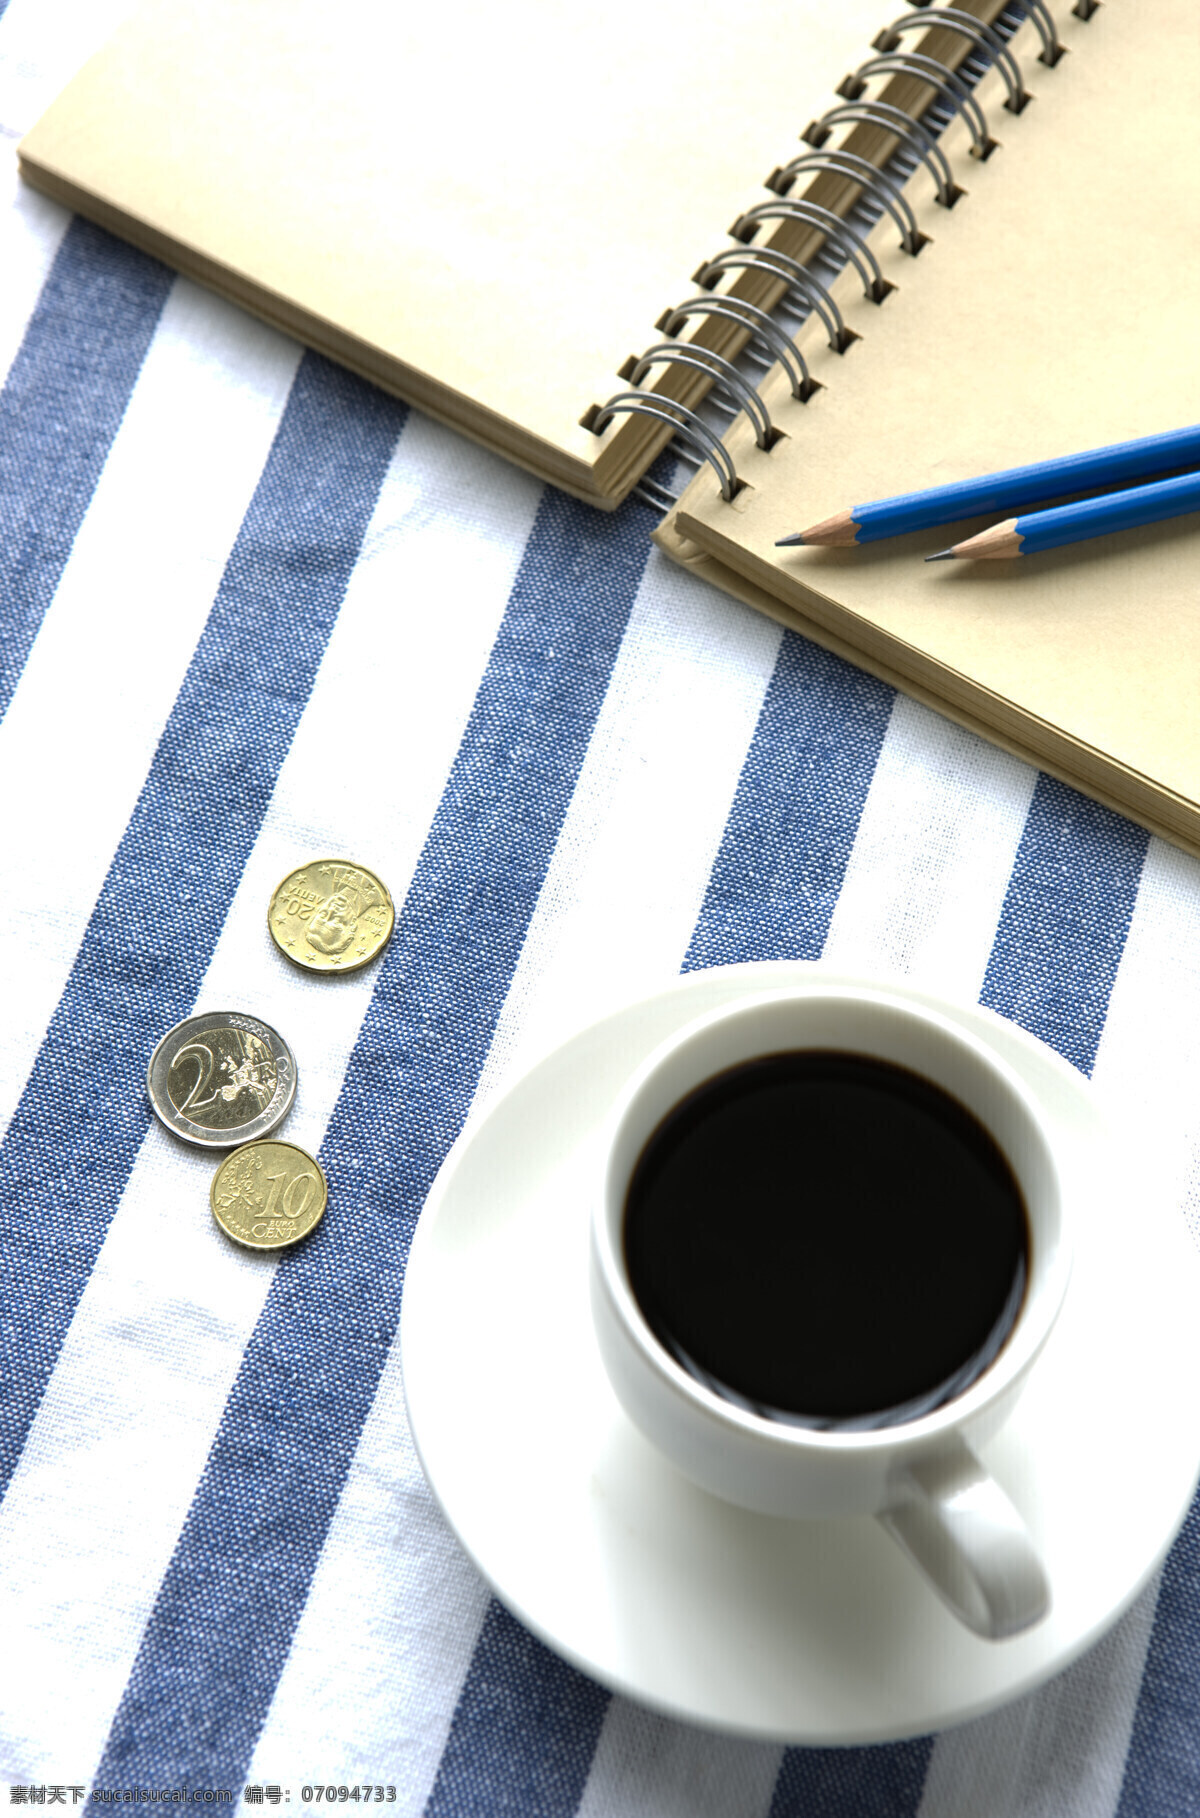 一杯 咖啡 记事本 咖啡杯 黑咖啡 笔记本 硬币 铅笔 条纹桌布 休闲 品味生活 高清图片 咖啡图片 餐饮美食